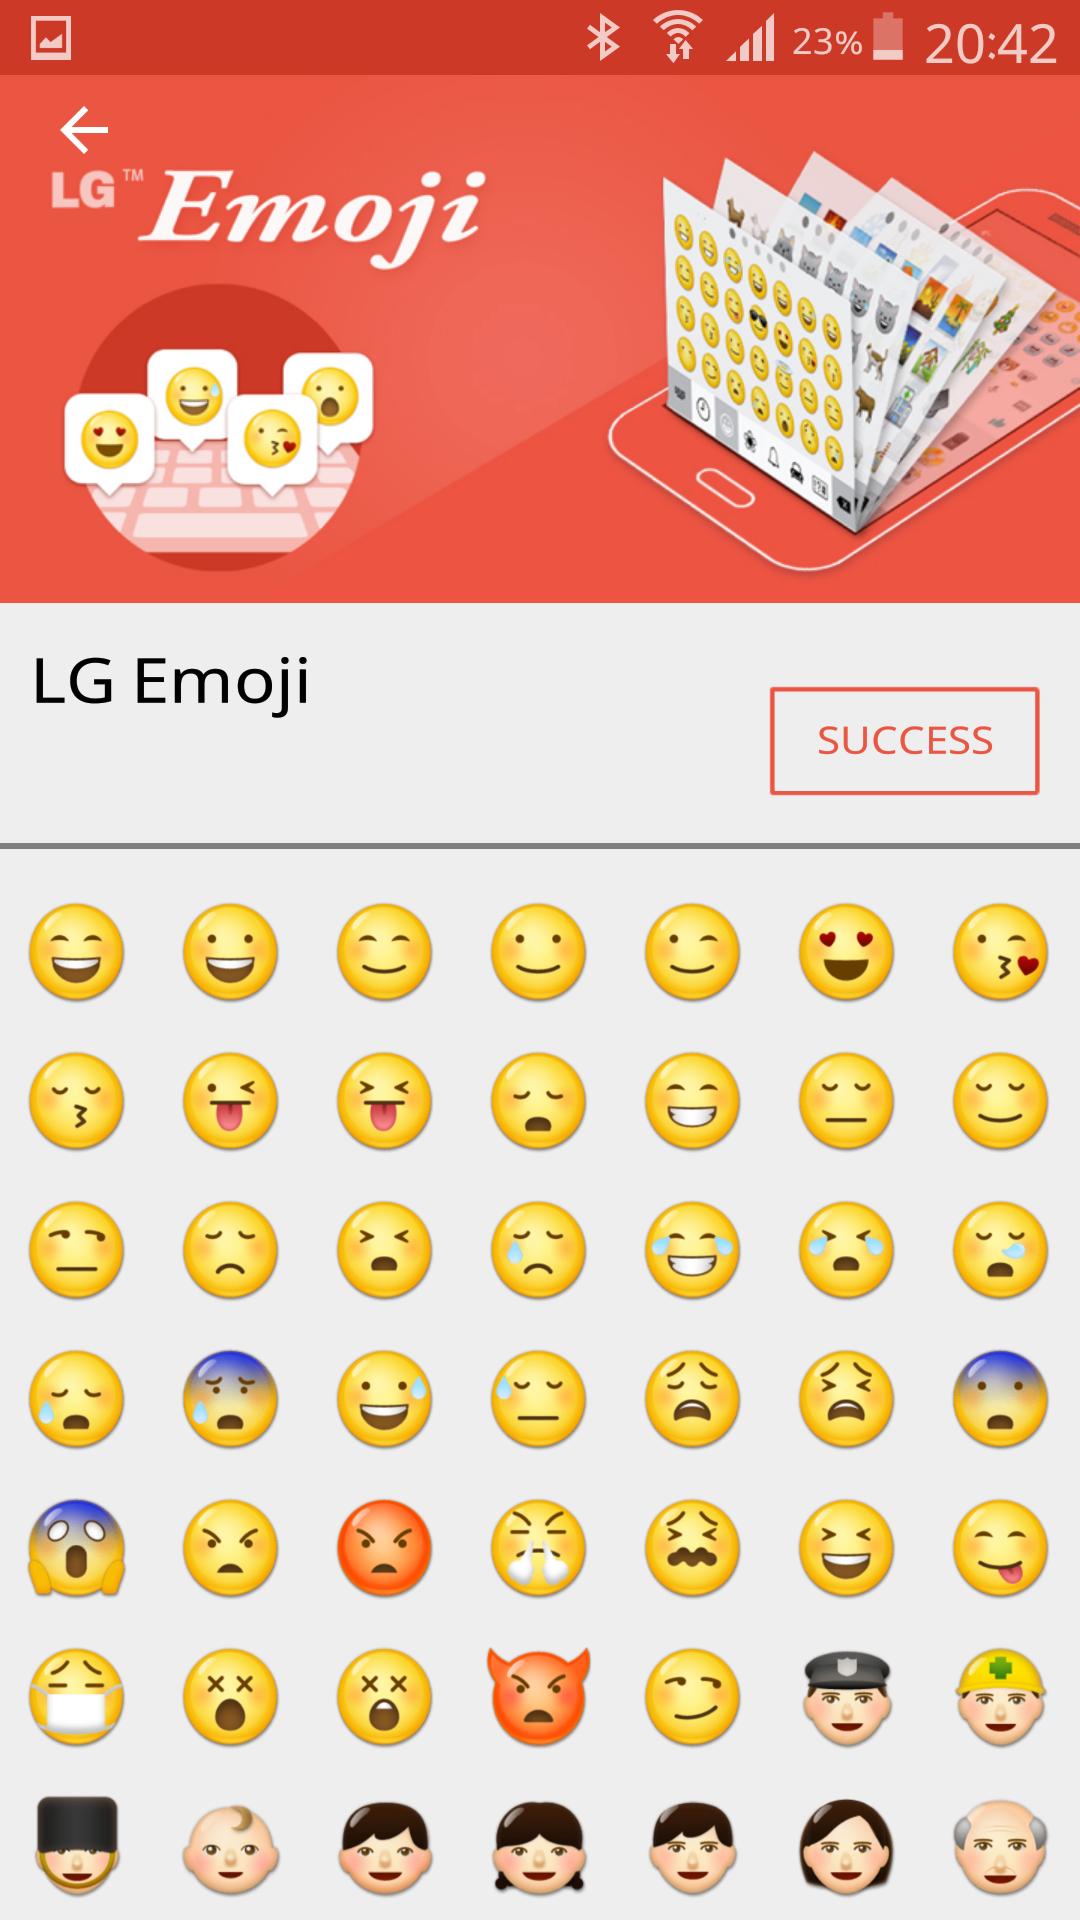 Bạn đã thấy các font emojis mới chưa? Hãy cập nhật điện thoại smartphone của mình để trải nghiệm những trải nghiệm thú vị với những biểu tượng đầy tính năng mới và hấp dẫn hơn. Với các font emojis nâng cấp, bạn có thể tạo nên những hình ảnh cảm xúc độc đáo, riêng tư hơn để gửi đến người thân và bạn bè.